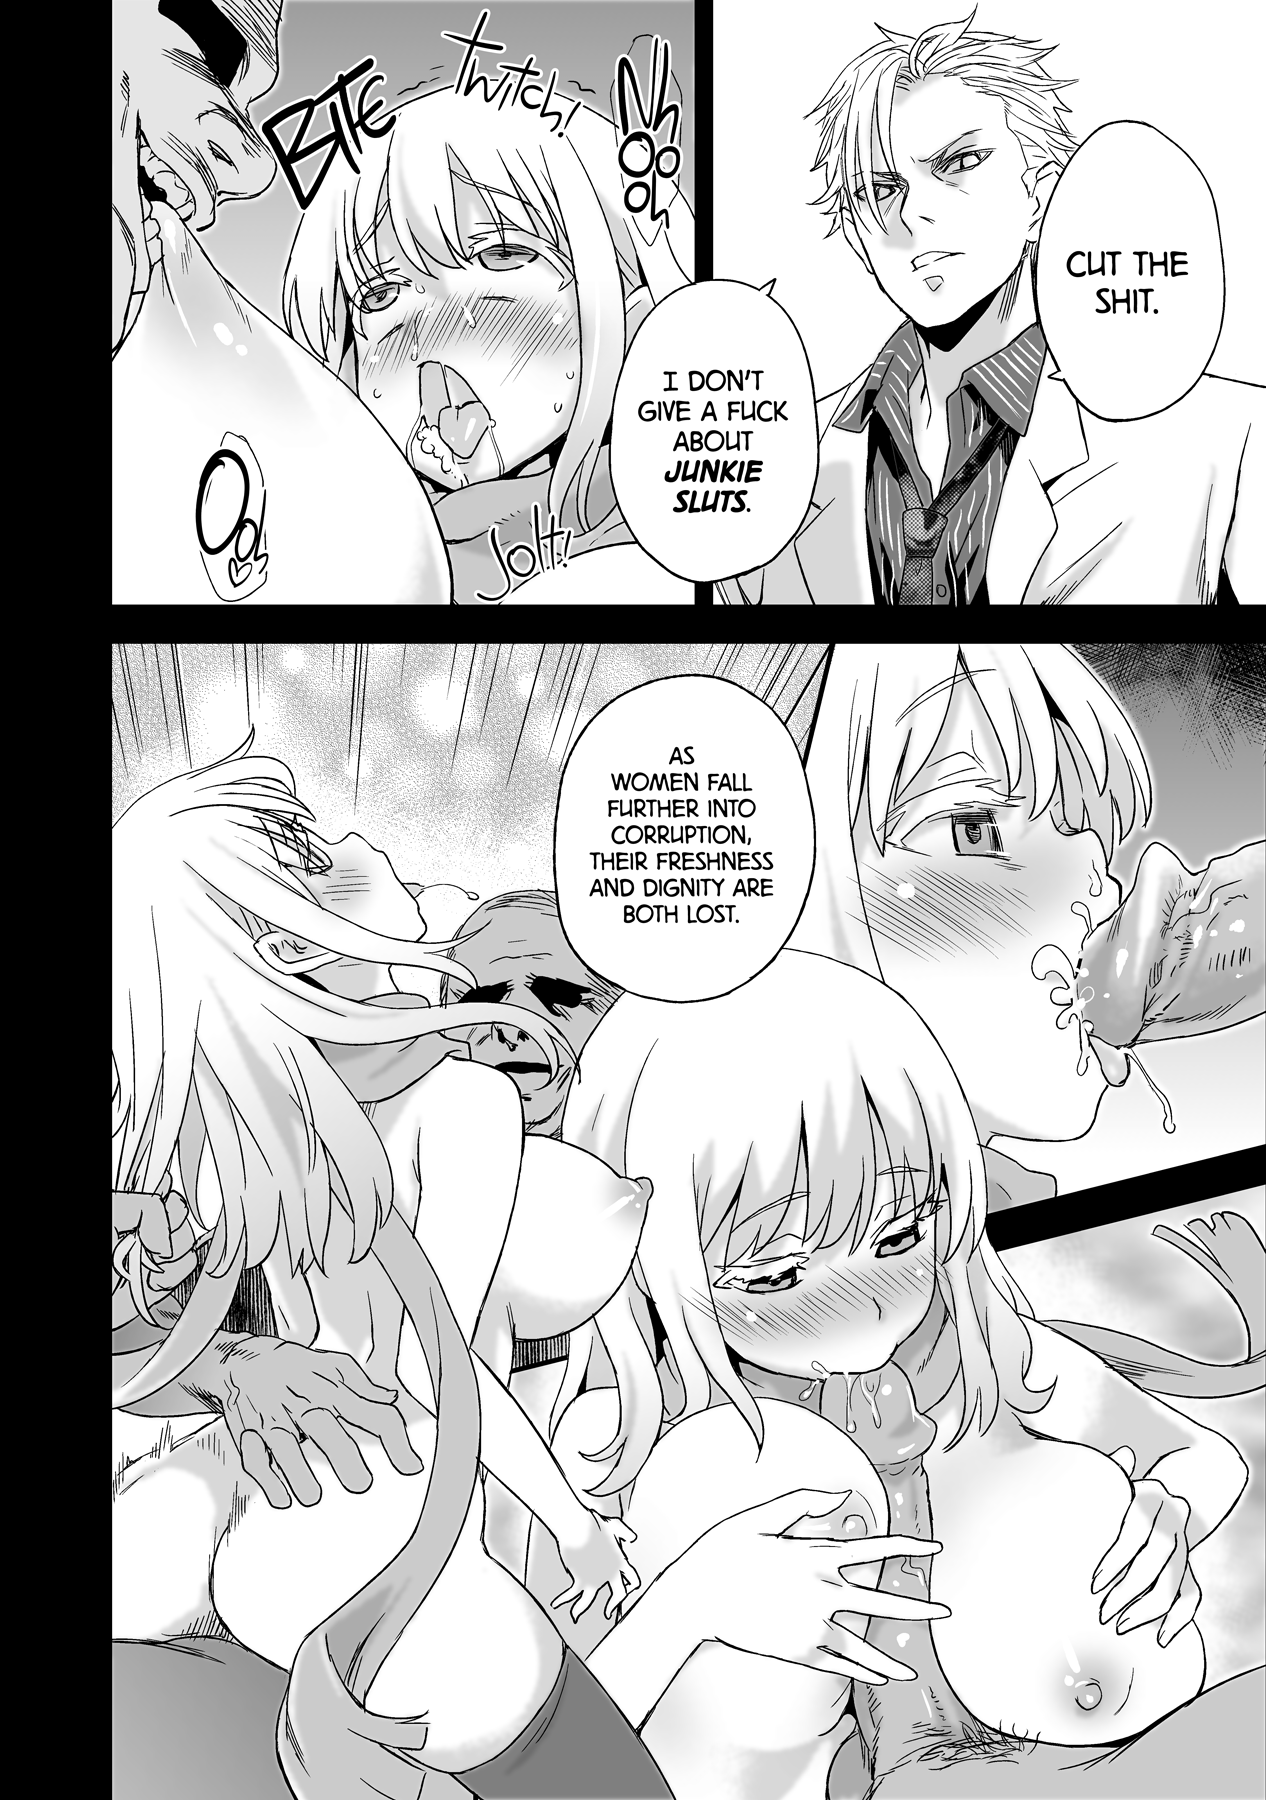 Victim Girls 13 - DRAGON SLAYER hentai manga picture 8